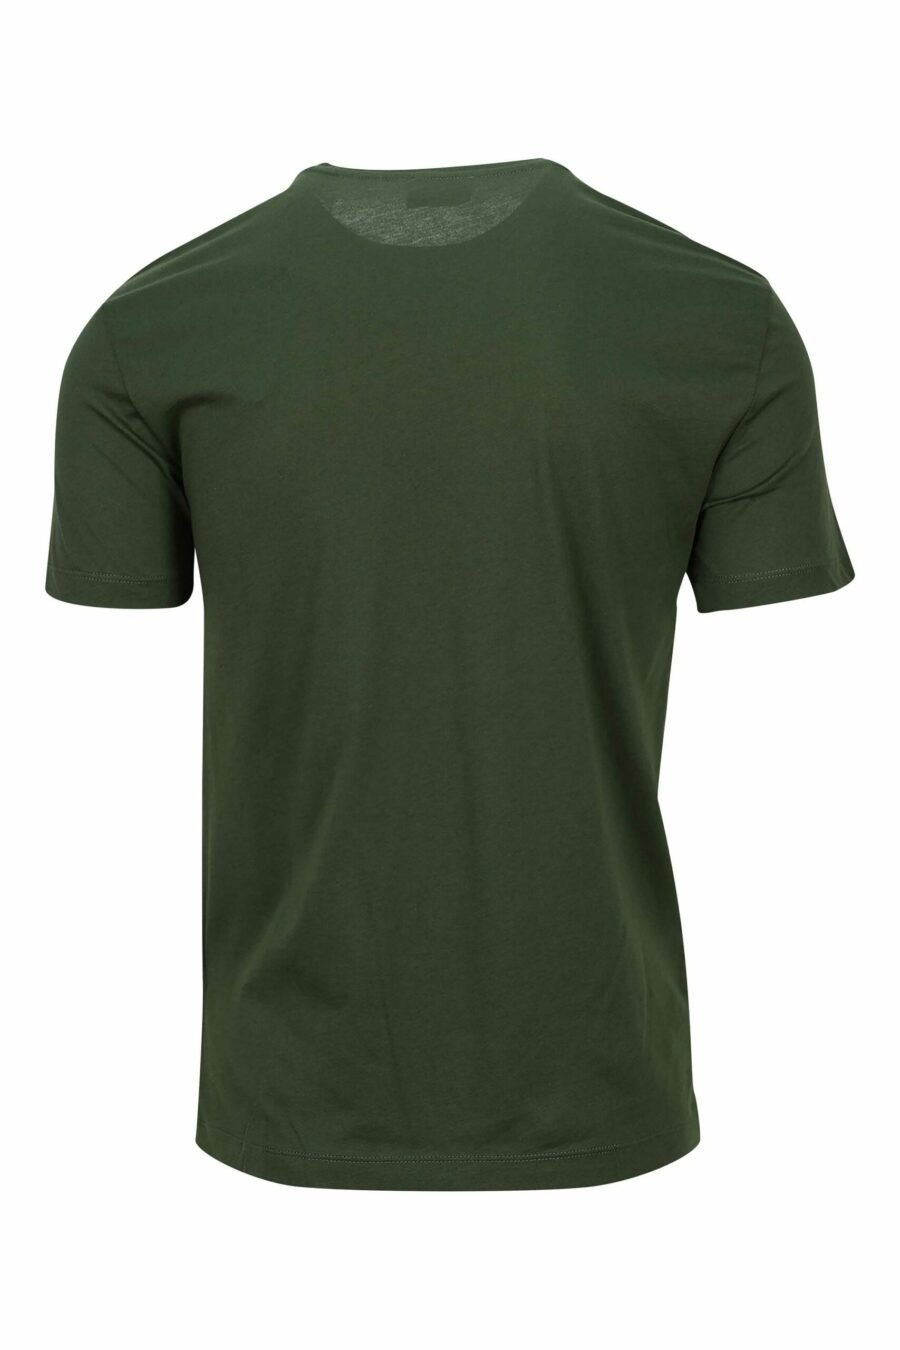 Camiseta verde oscuro con minilogo etiqueta "lux identity" dorado - 8057767634544 1 scaled